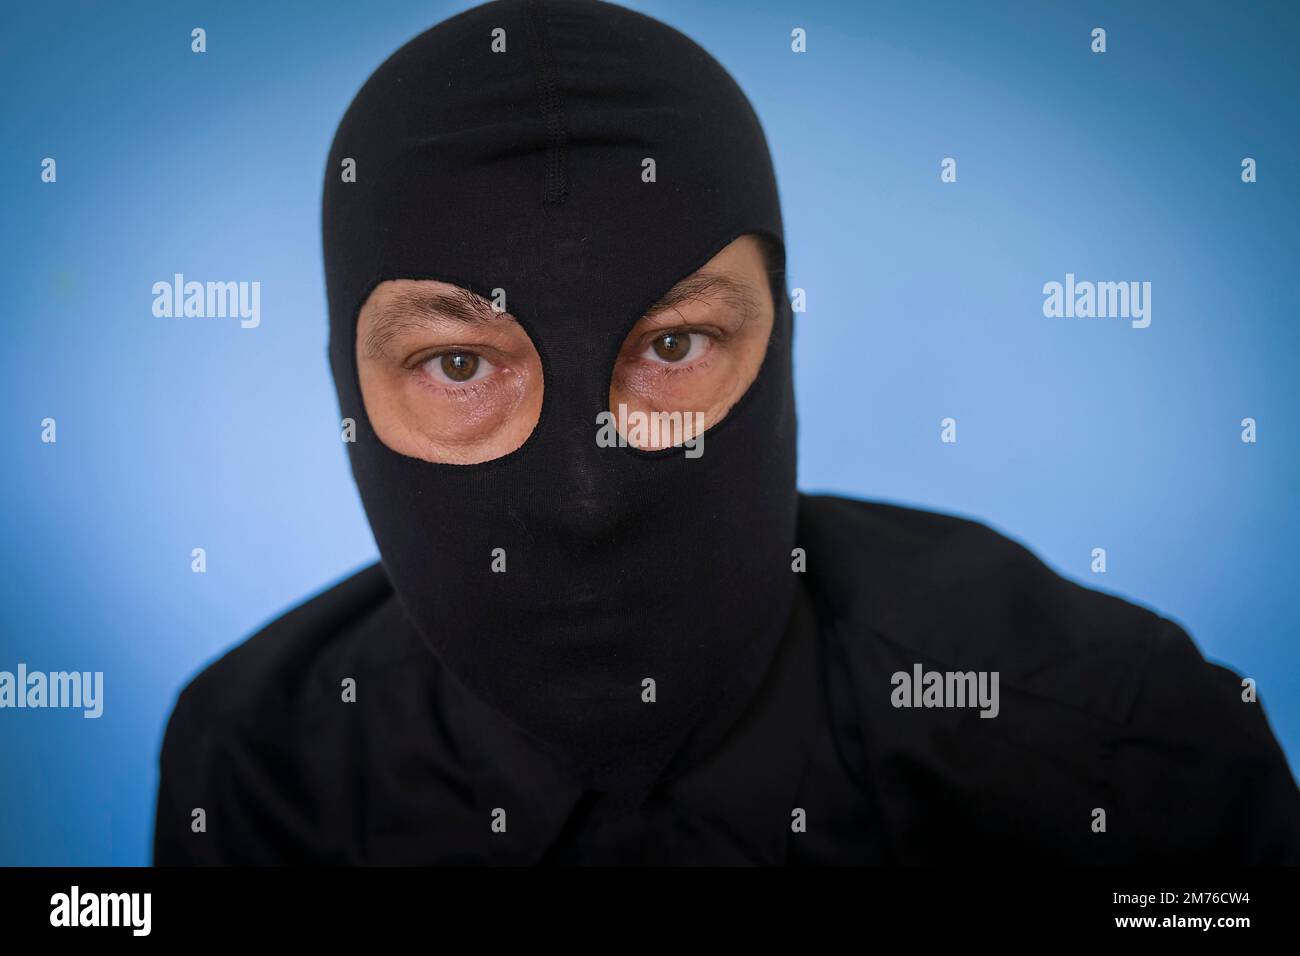 hombre con camisa negra y balaclava negro contra fondo azul, highjacker, terrorista, ladrón, ladrón, concepto de miedos Foto de stock